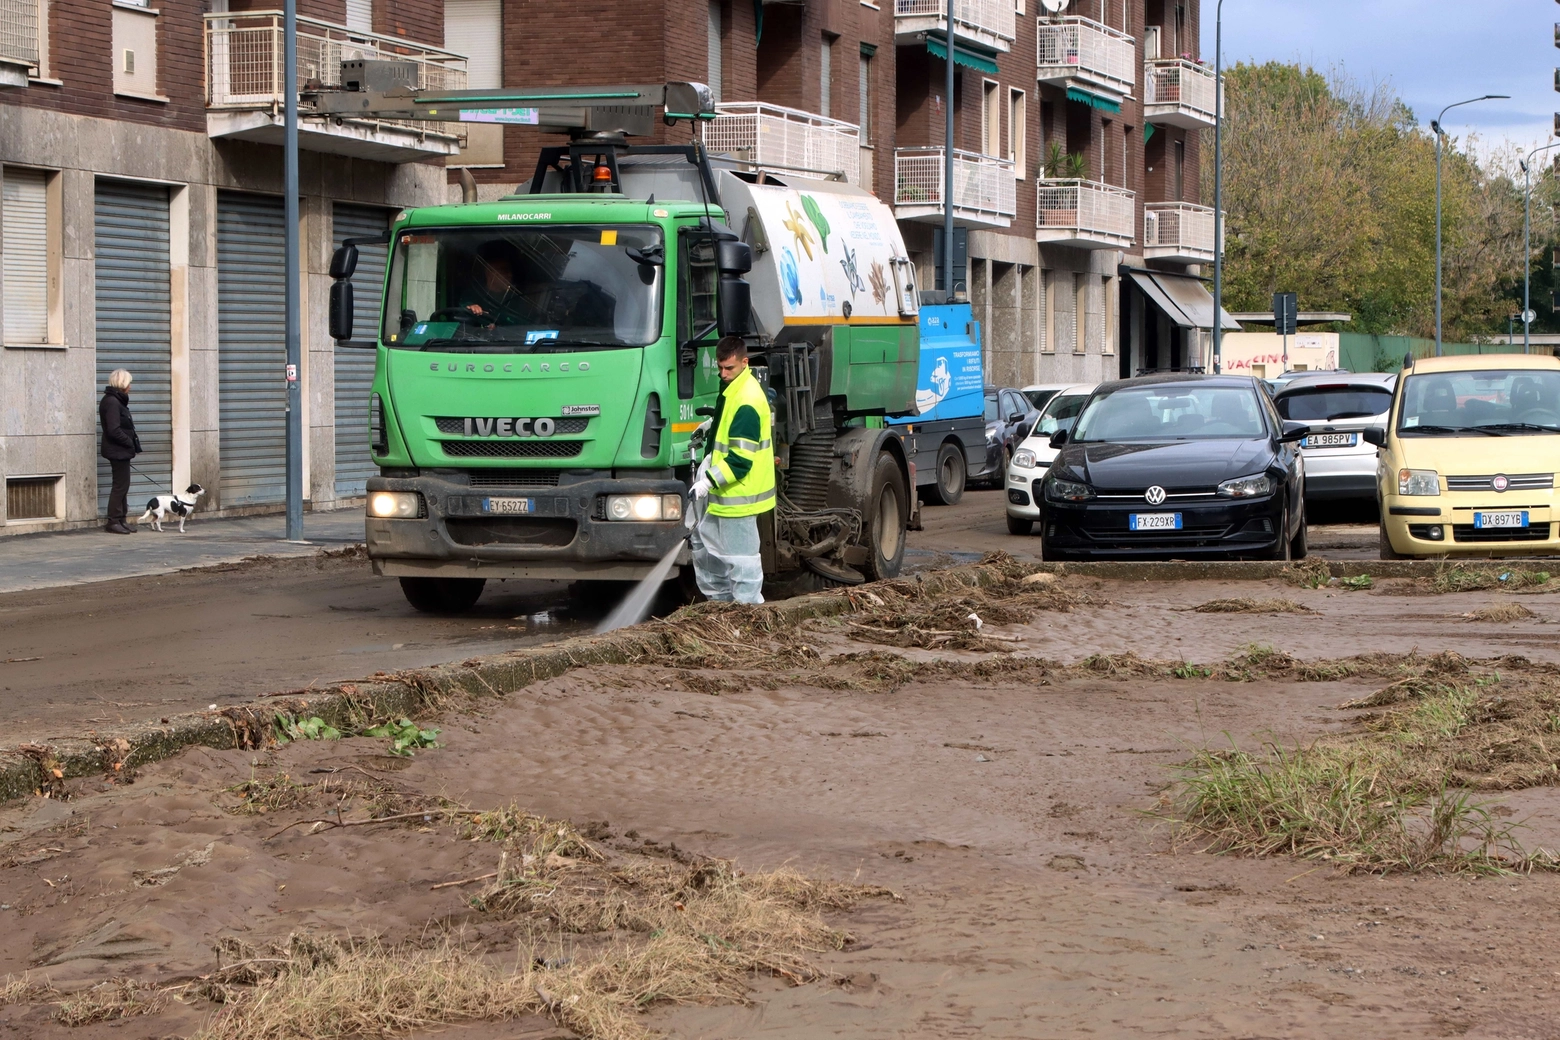 Interventi per ripulire le strade di Niguarda (Salmoirago)